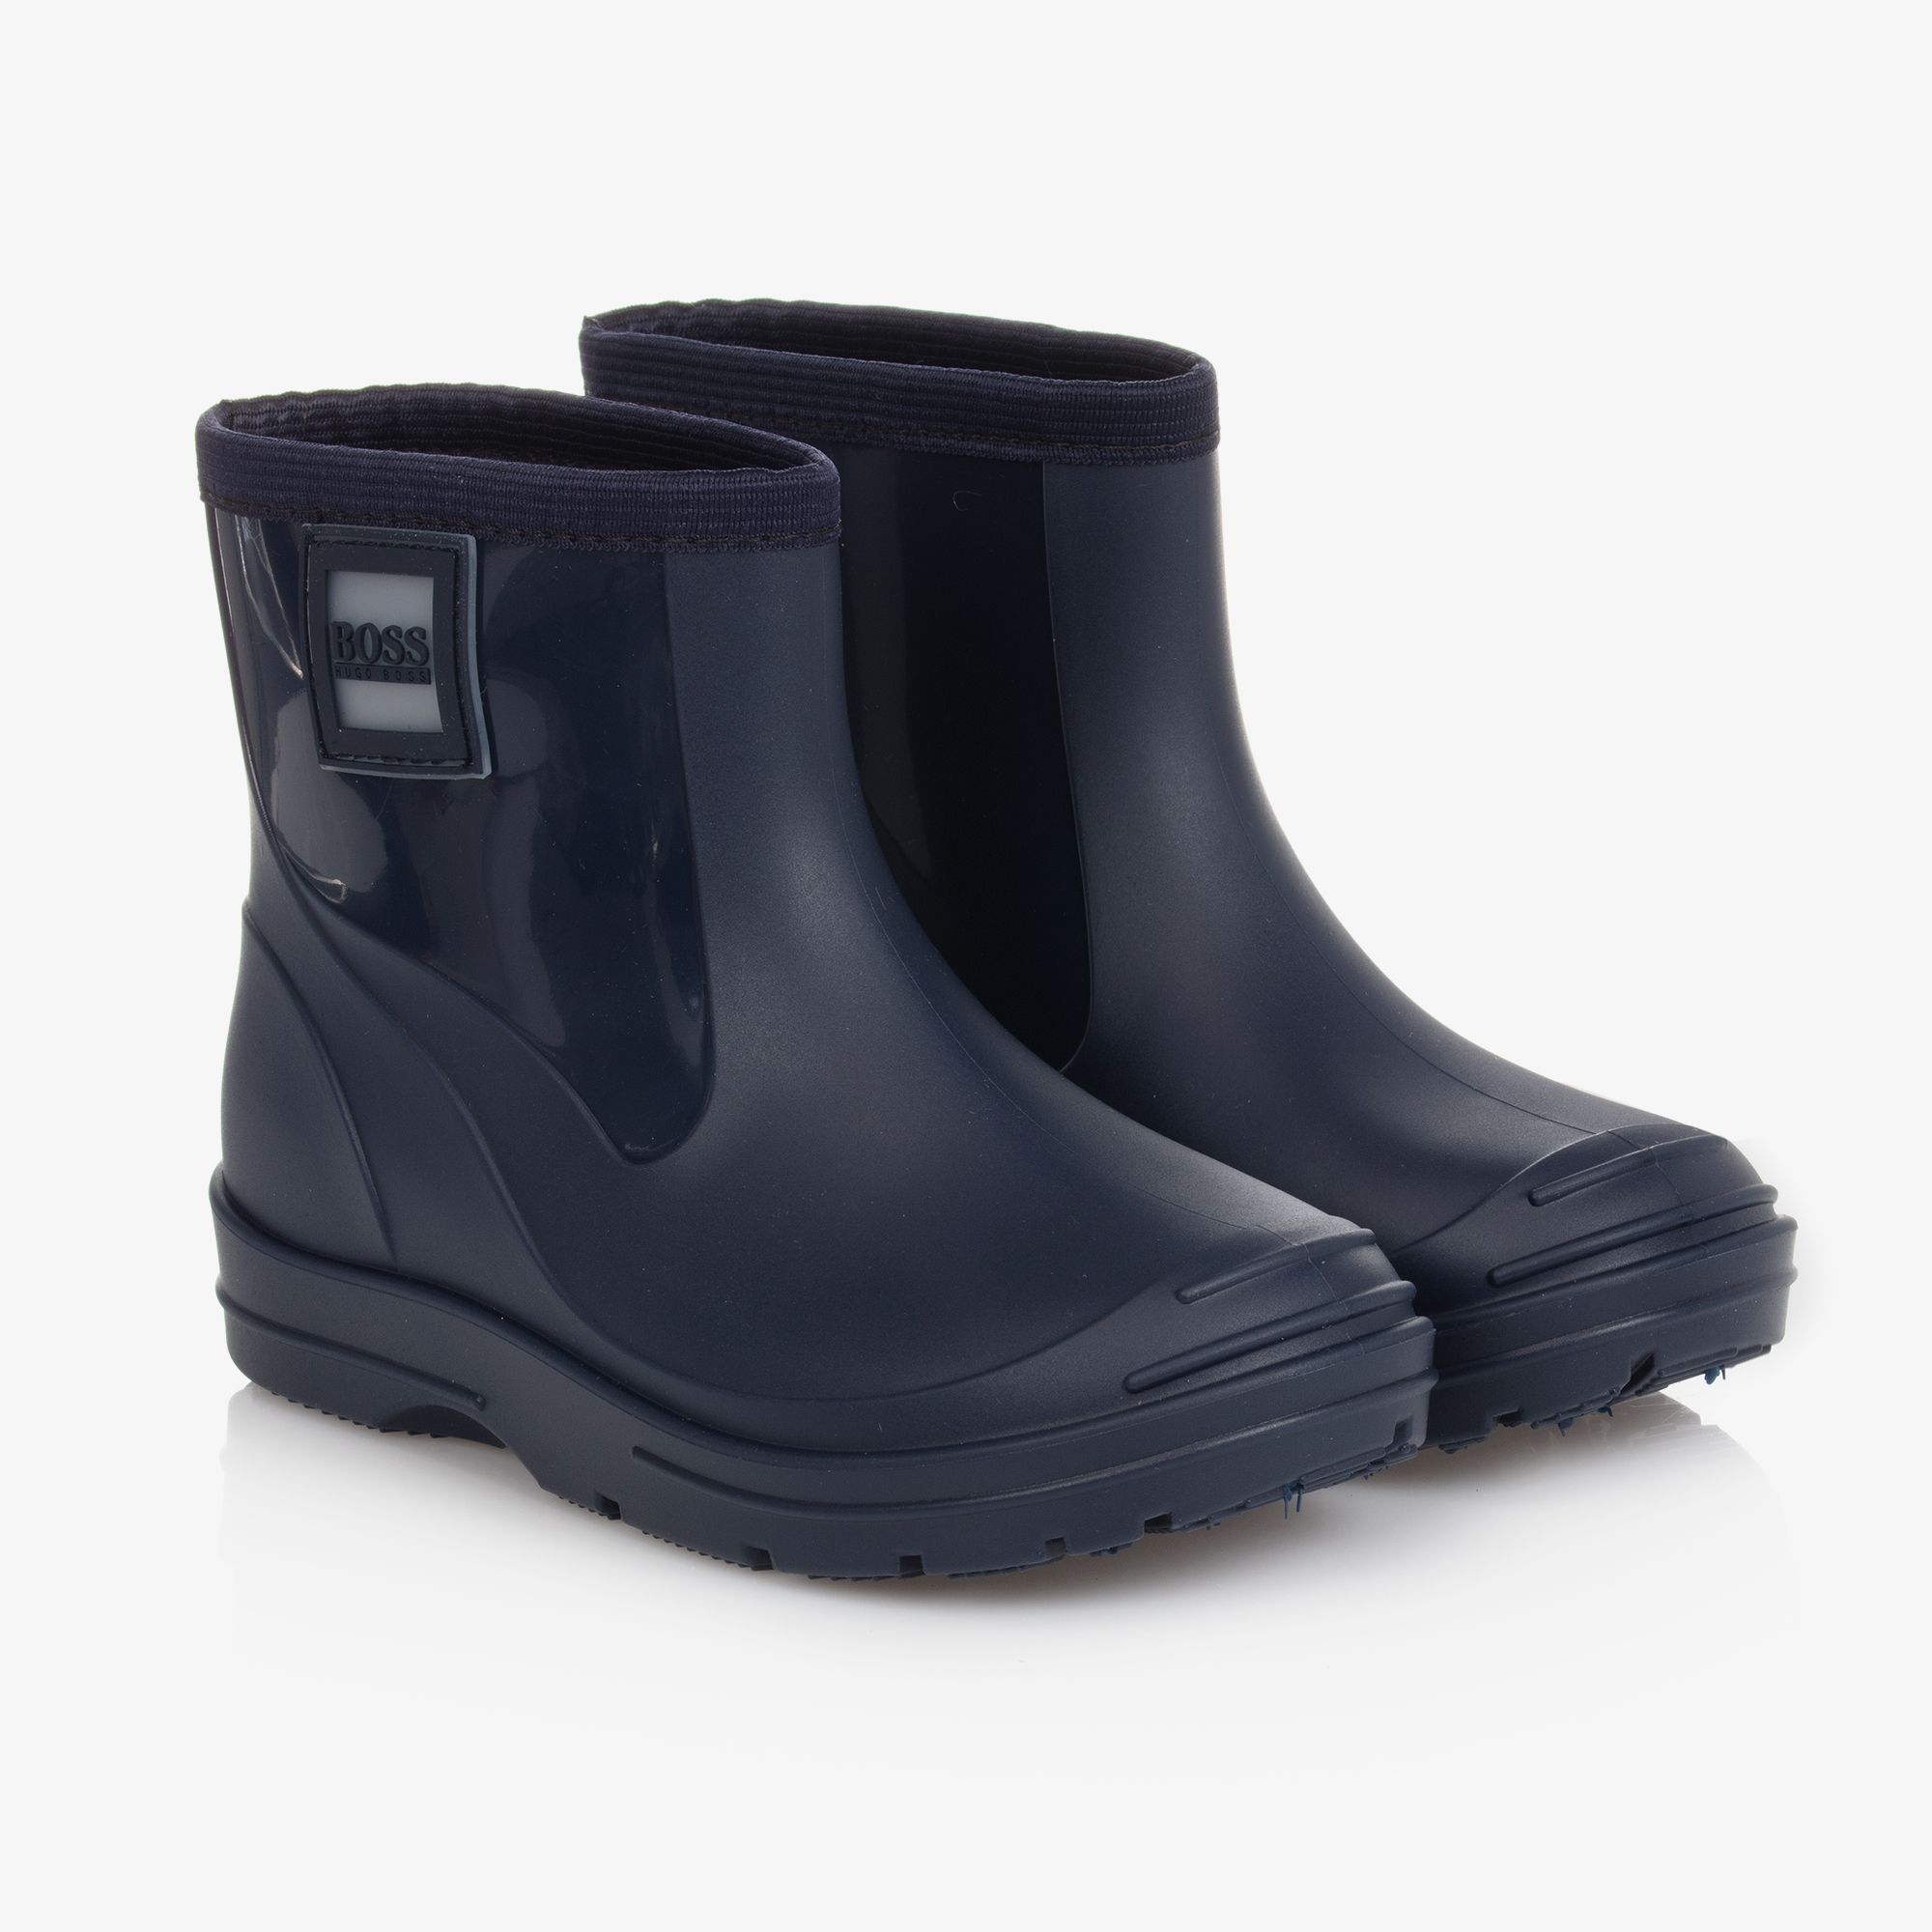 BOSS MELODY Marine - Chaussures Bottes de pluie Enfant 39,20 €